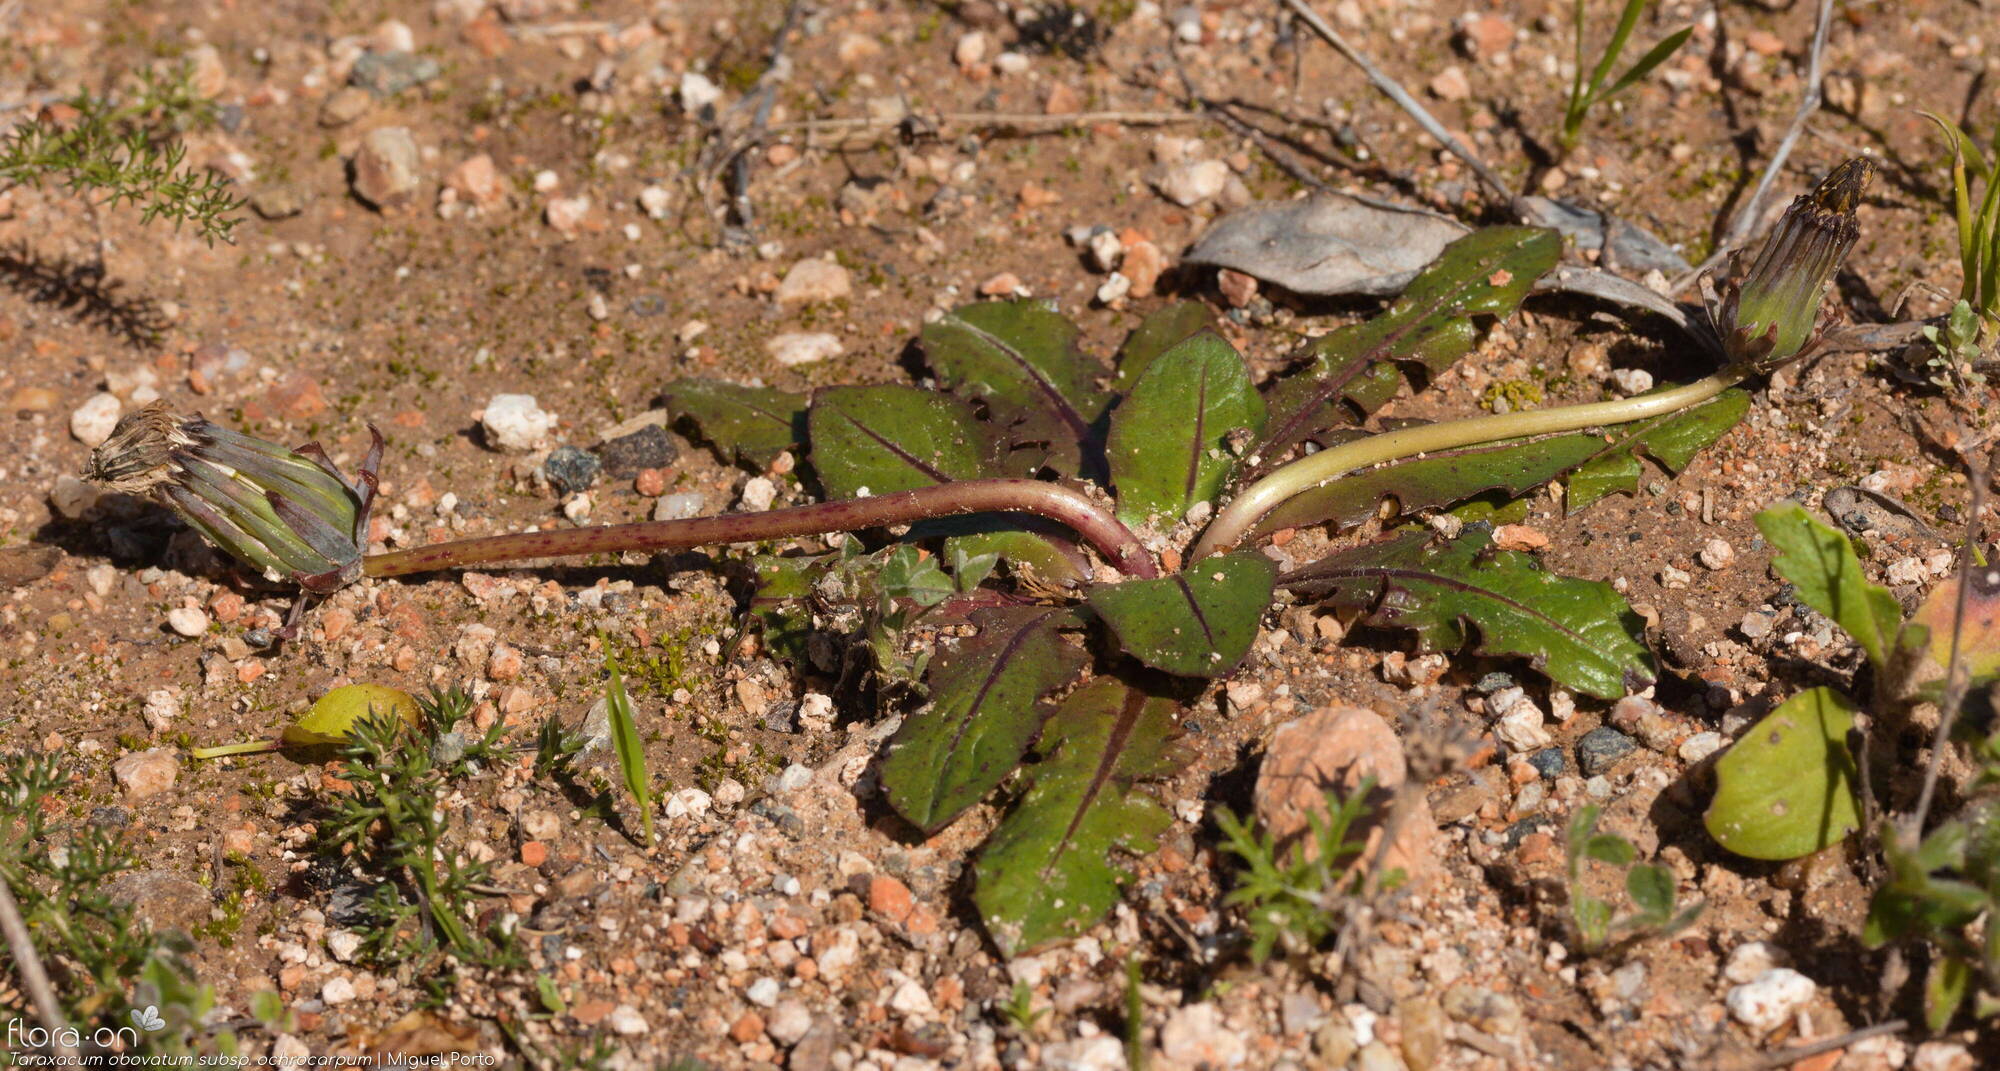 Taraxacum obovatum ochrocarpum - Hábito | Miguel Porto; CC BY-NC 4.0